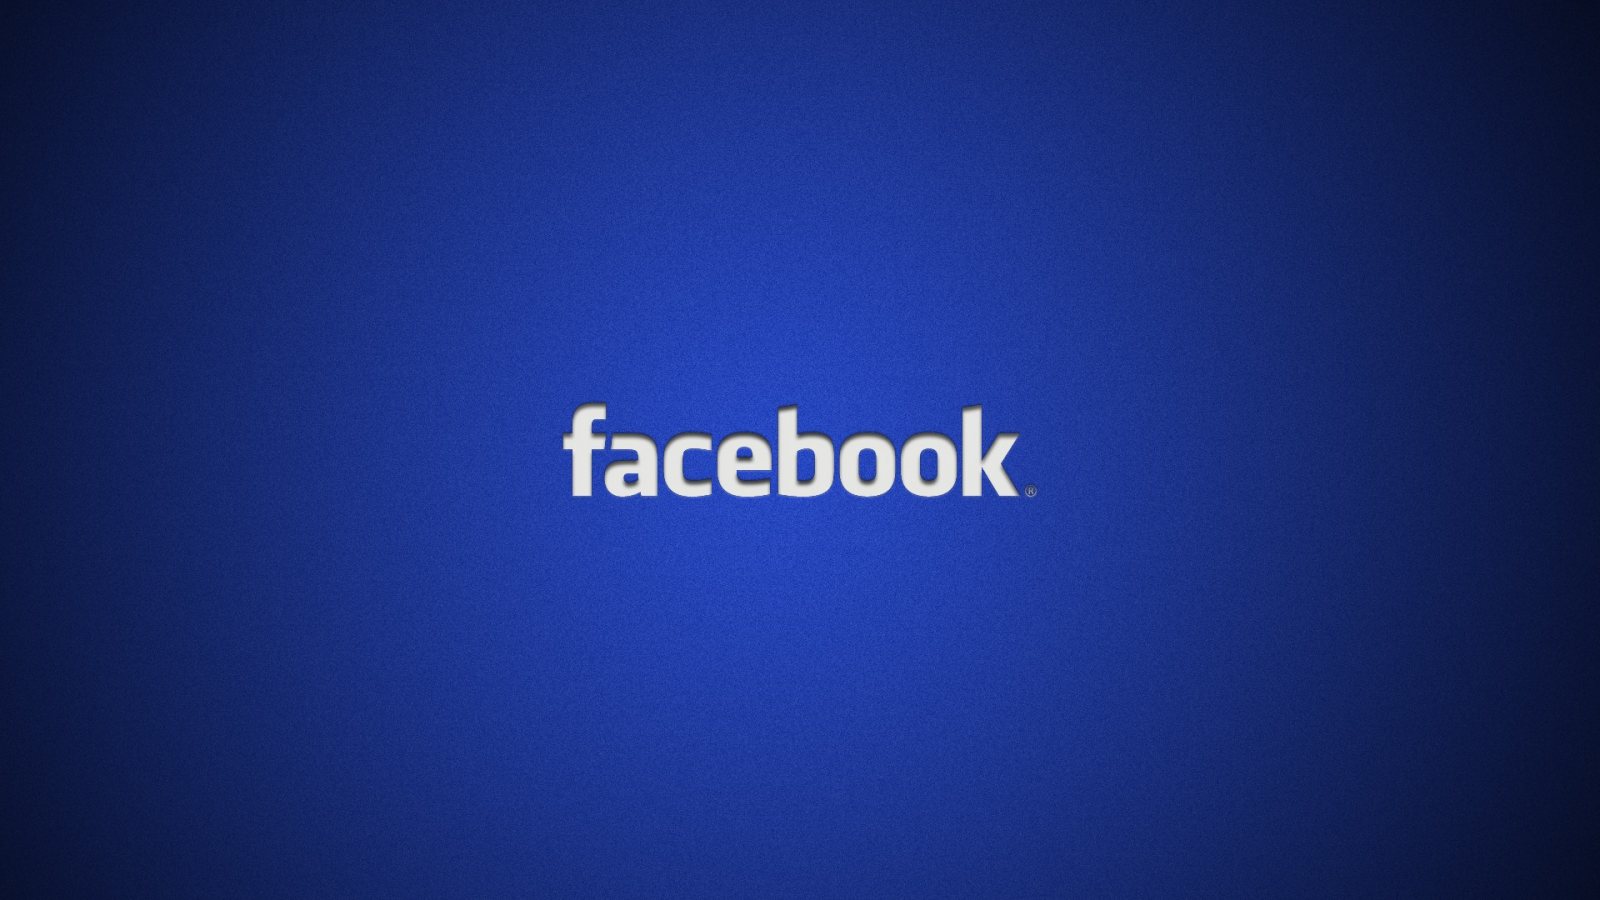 Facebook começa a hospedar notícias de outros sites neste mês